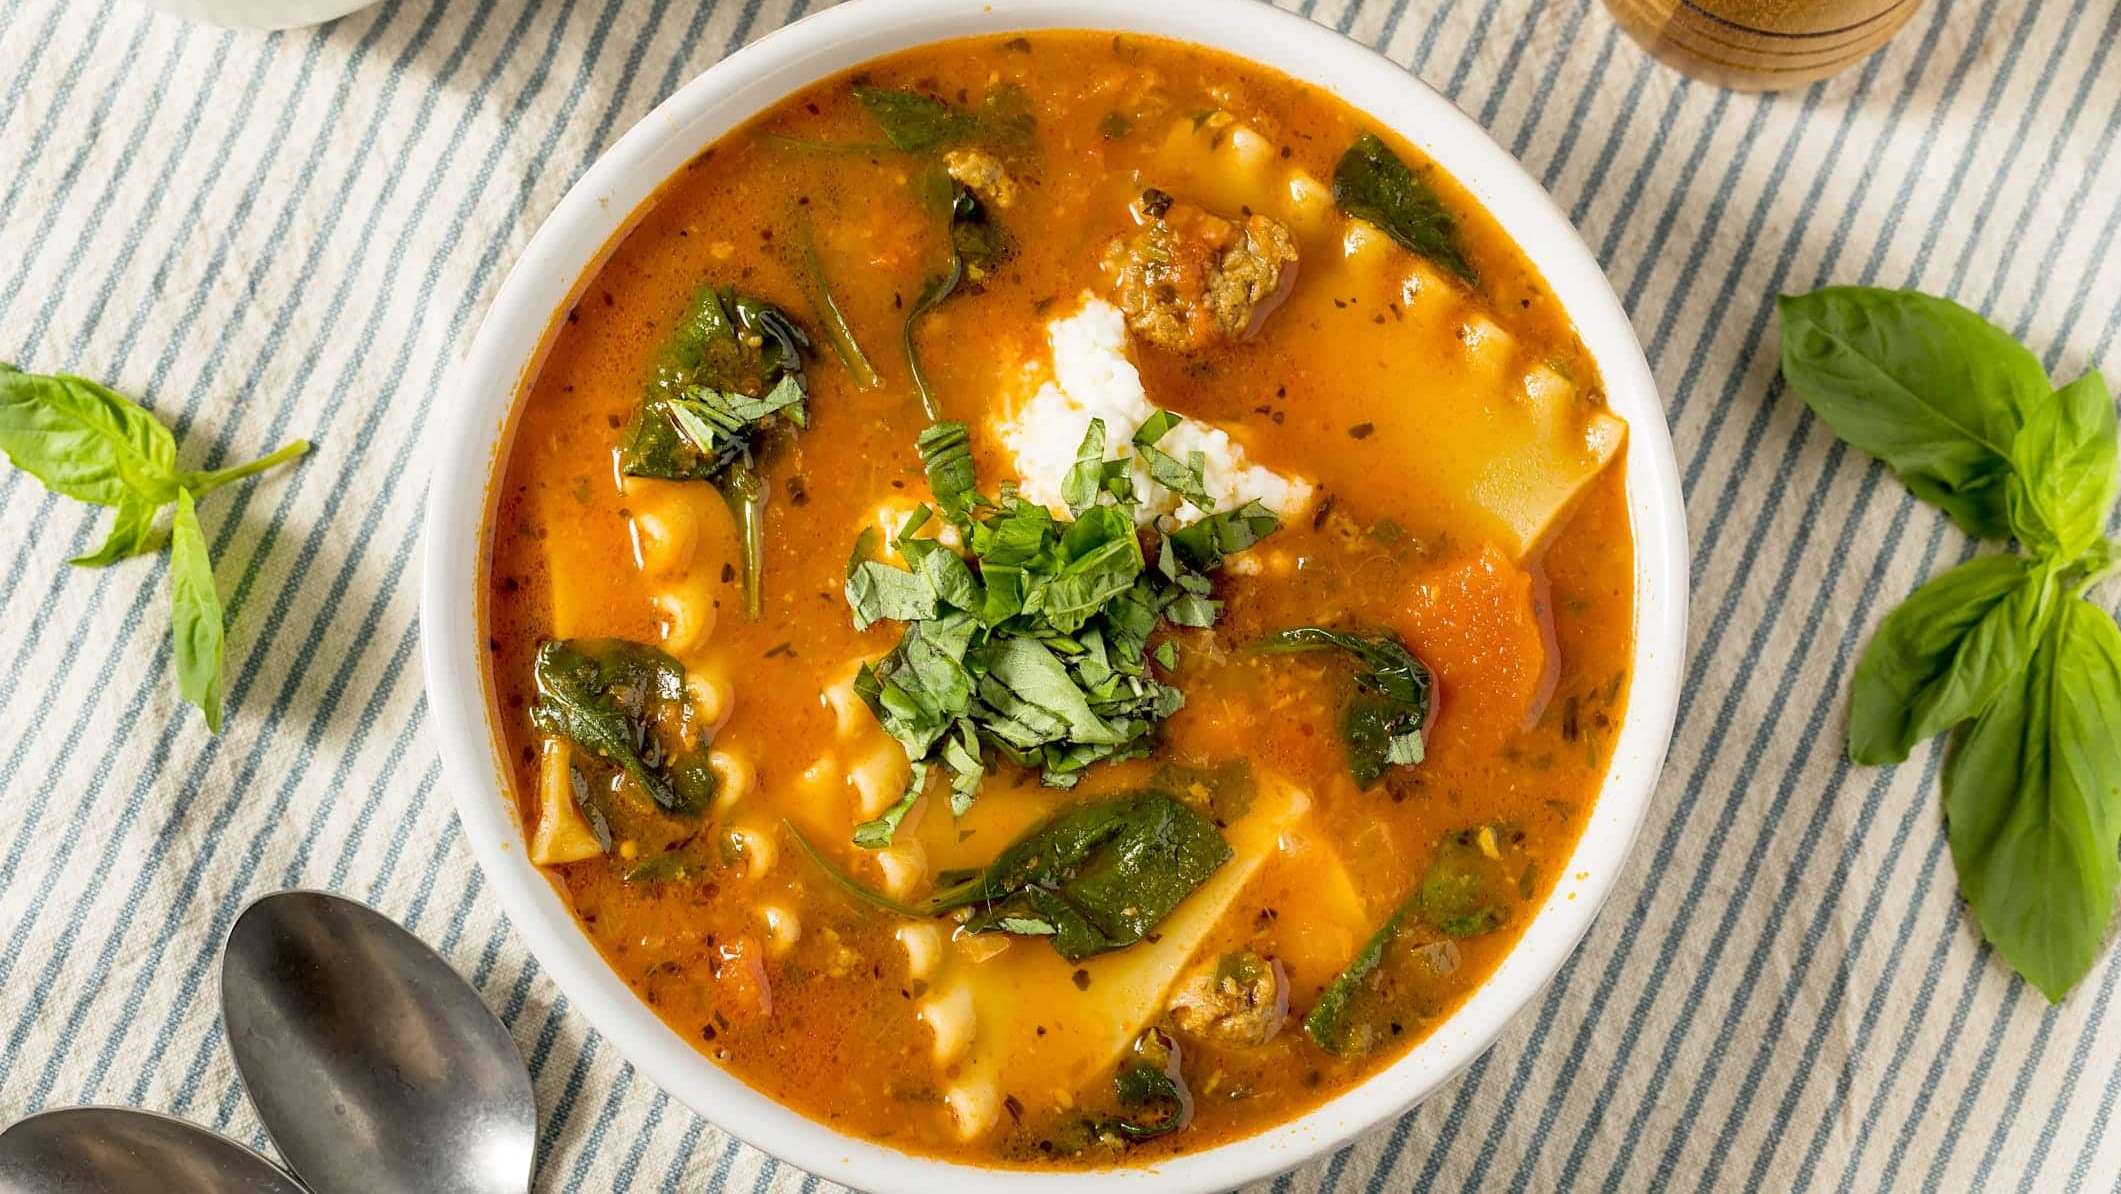 Un bol de soupe à la lasagne, une recette virale à faire pour la relâche scolaire